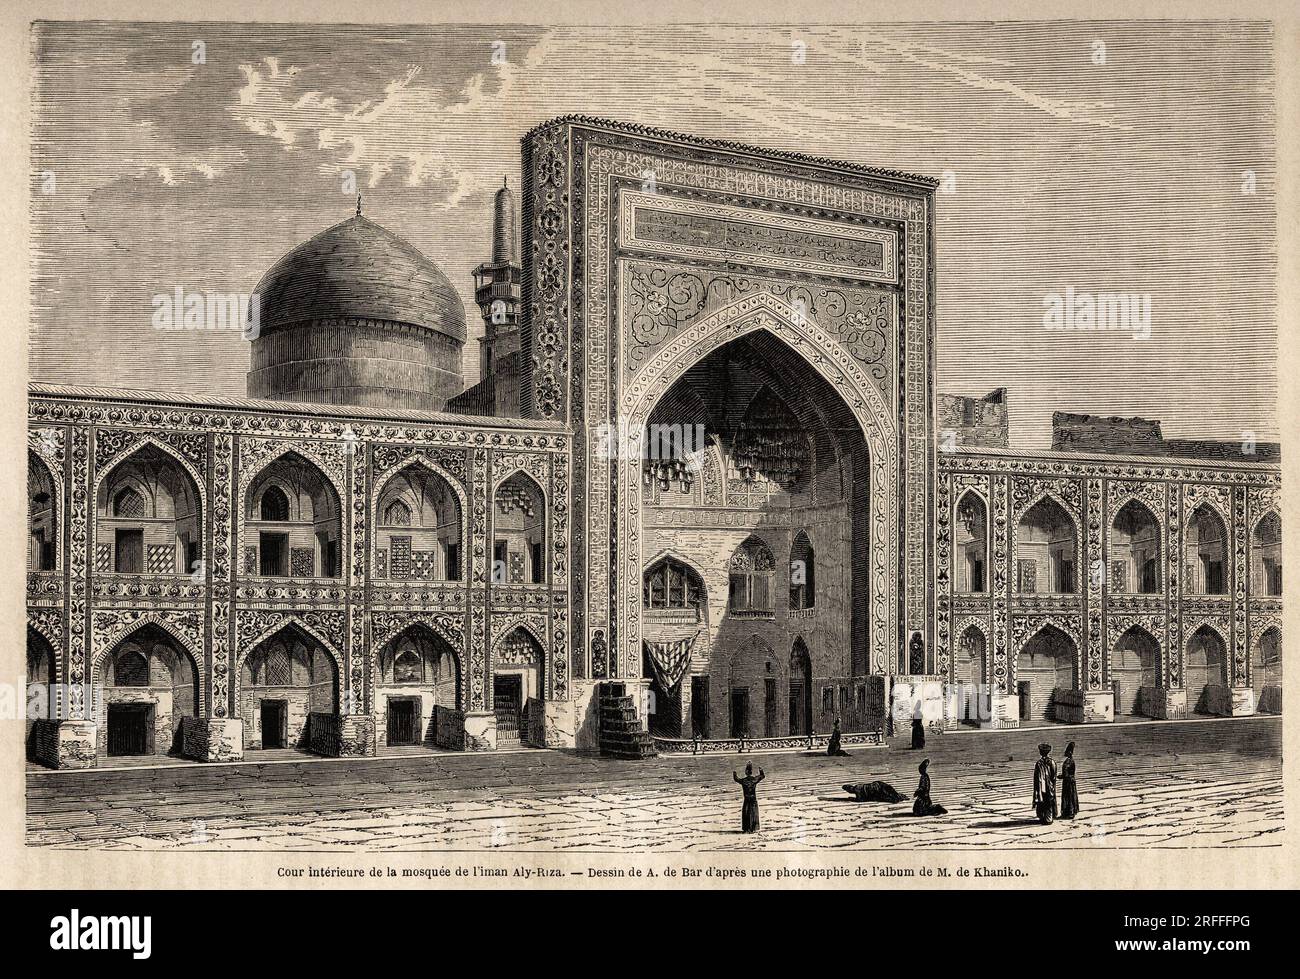 Cour interieure de la mosquee de l'imam Aly Riza Meched, dessin de A. de Bar, pour Illustrator le voyage dans le Khorassan (Khorasan, Chorasan ou Khurasan) en 1858, de N.de Khanikof. Gravure in „Le Tour du Monde“ 1861. Stockfoto